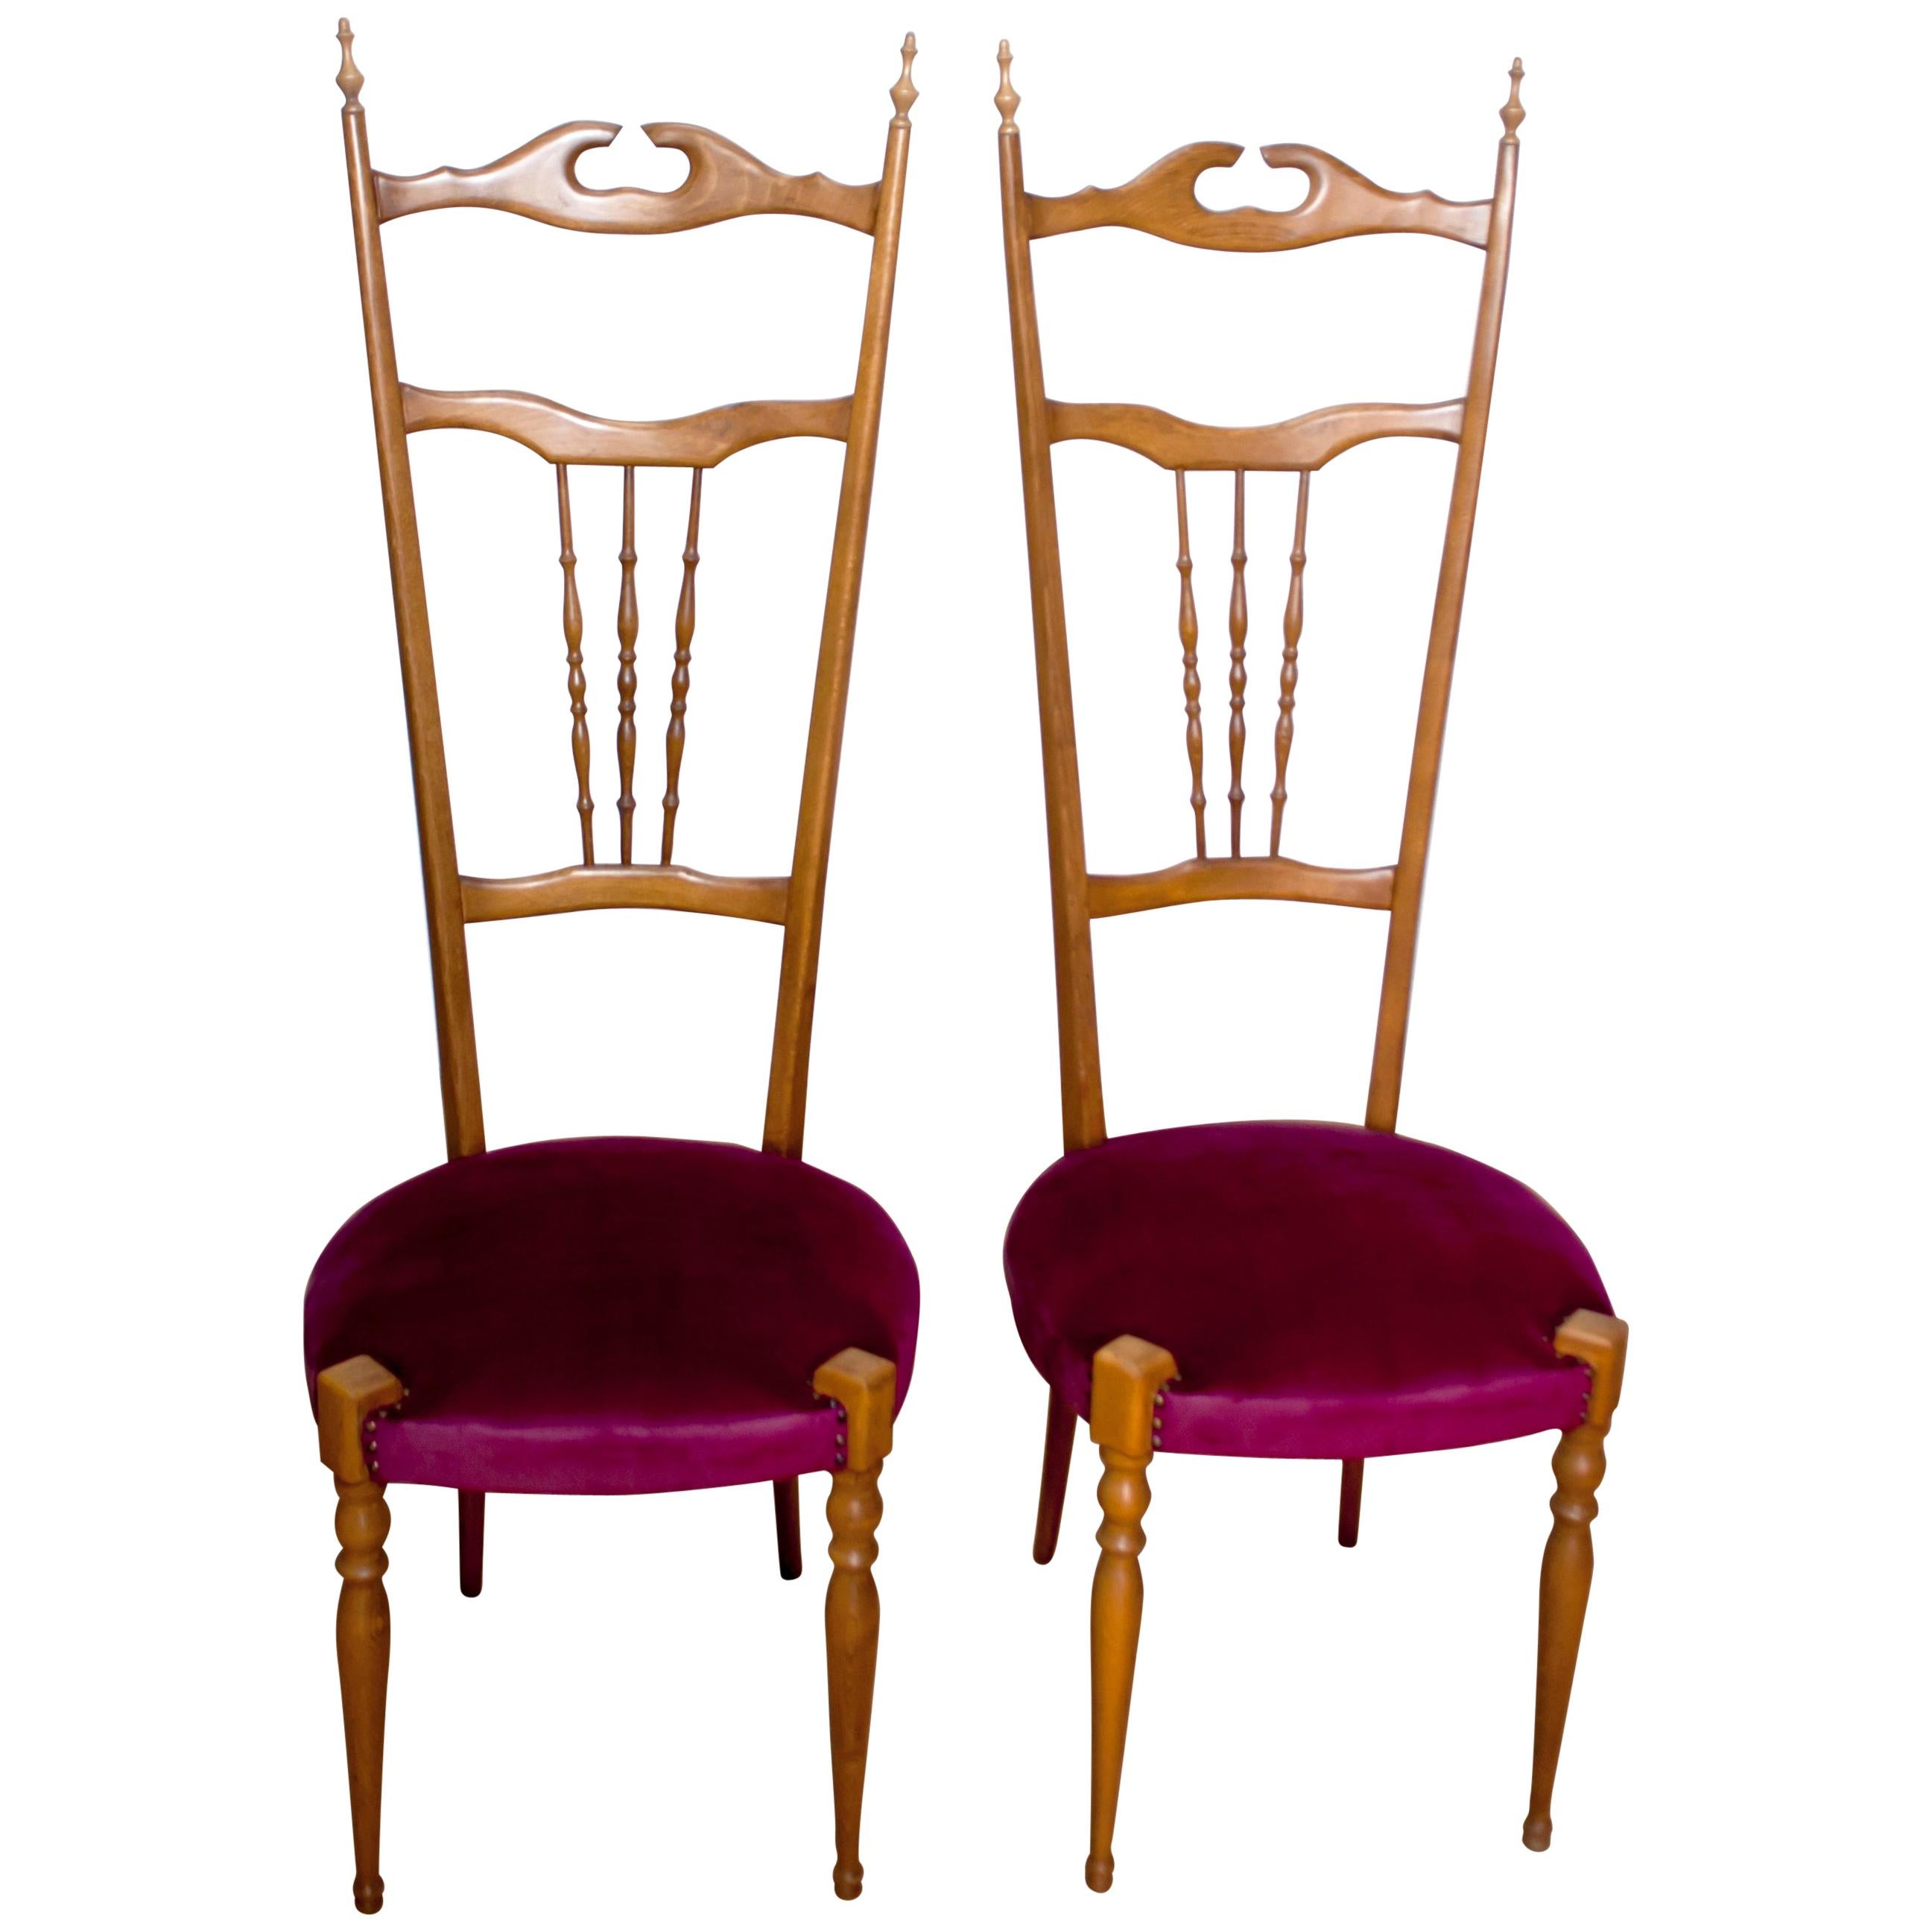 Pair of Gaetano Descalzi Midcentury Italian Chiavari High Back Chairs, 1950s